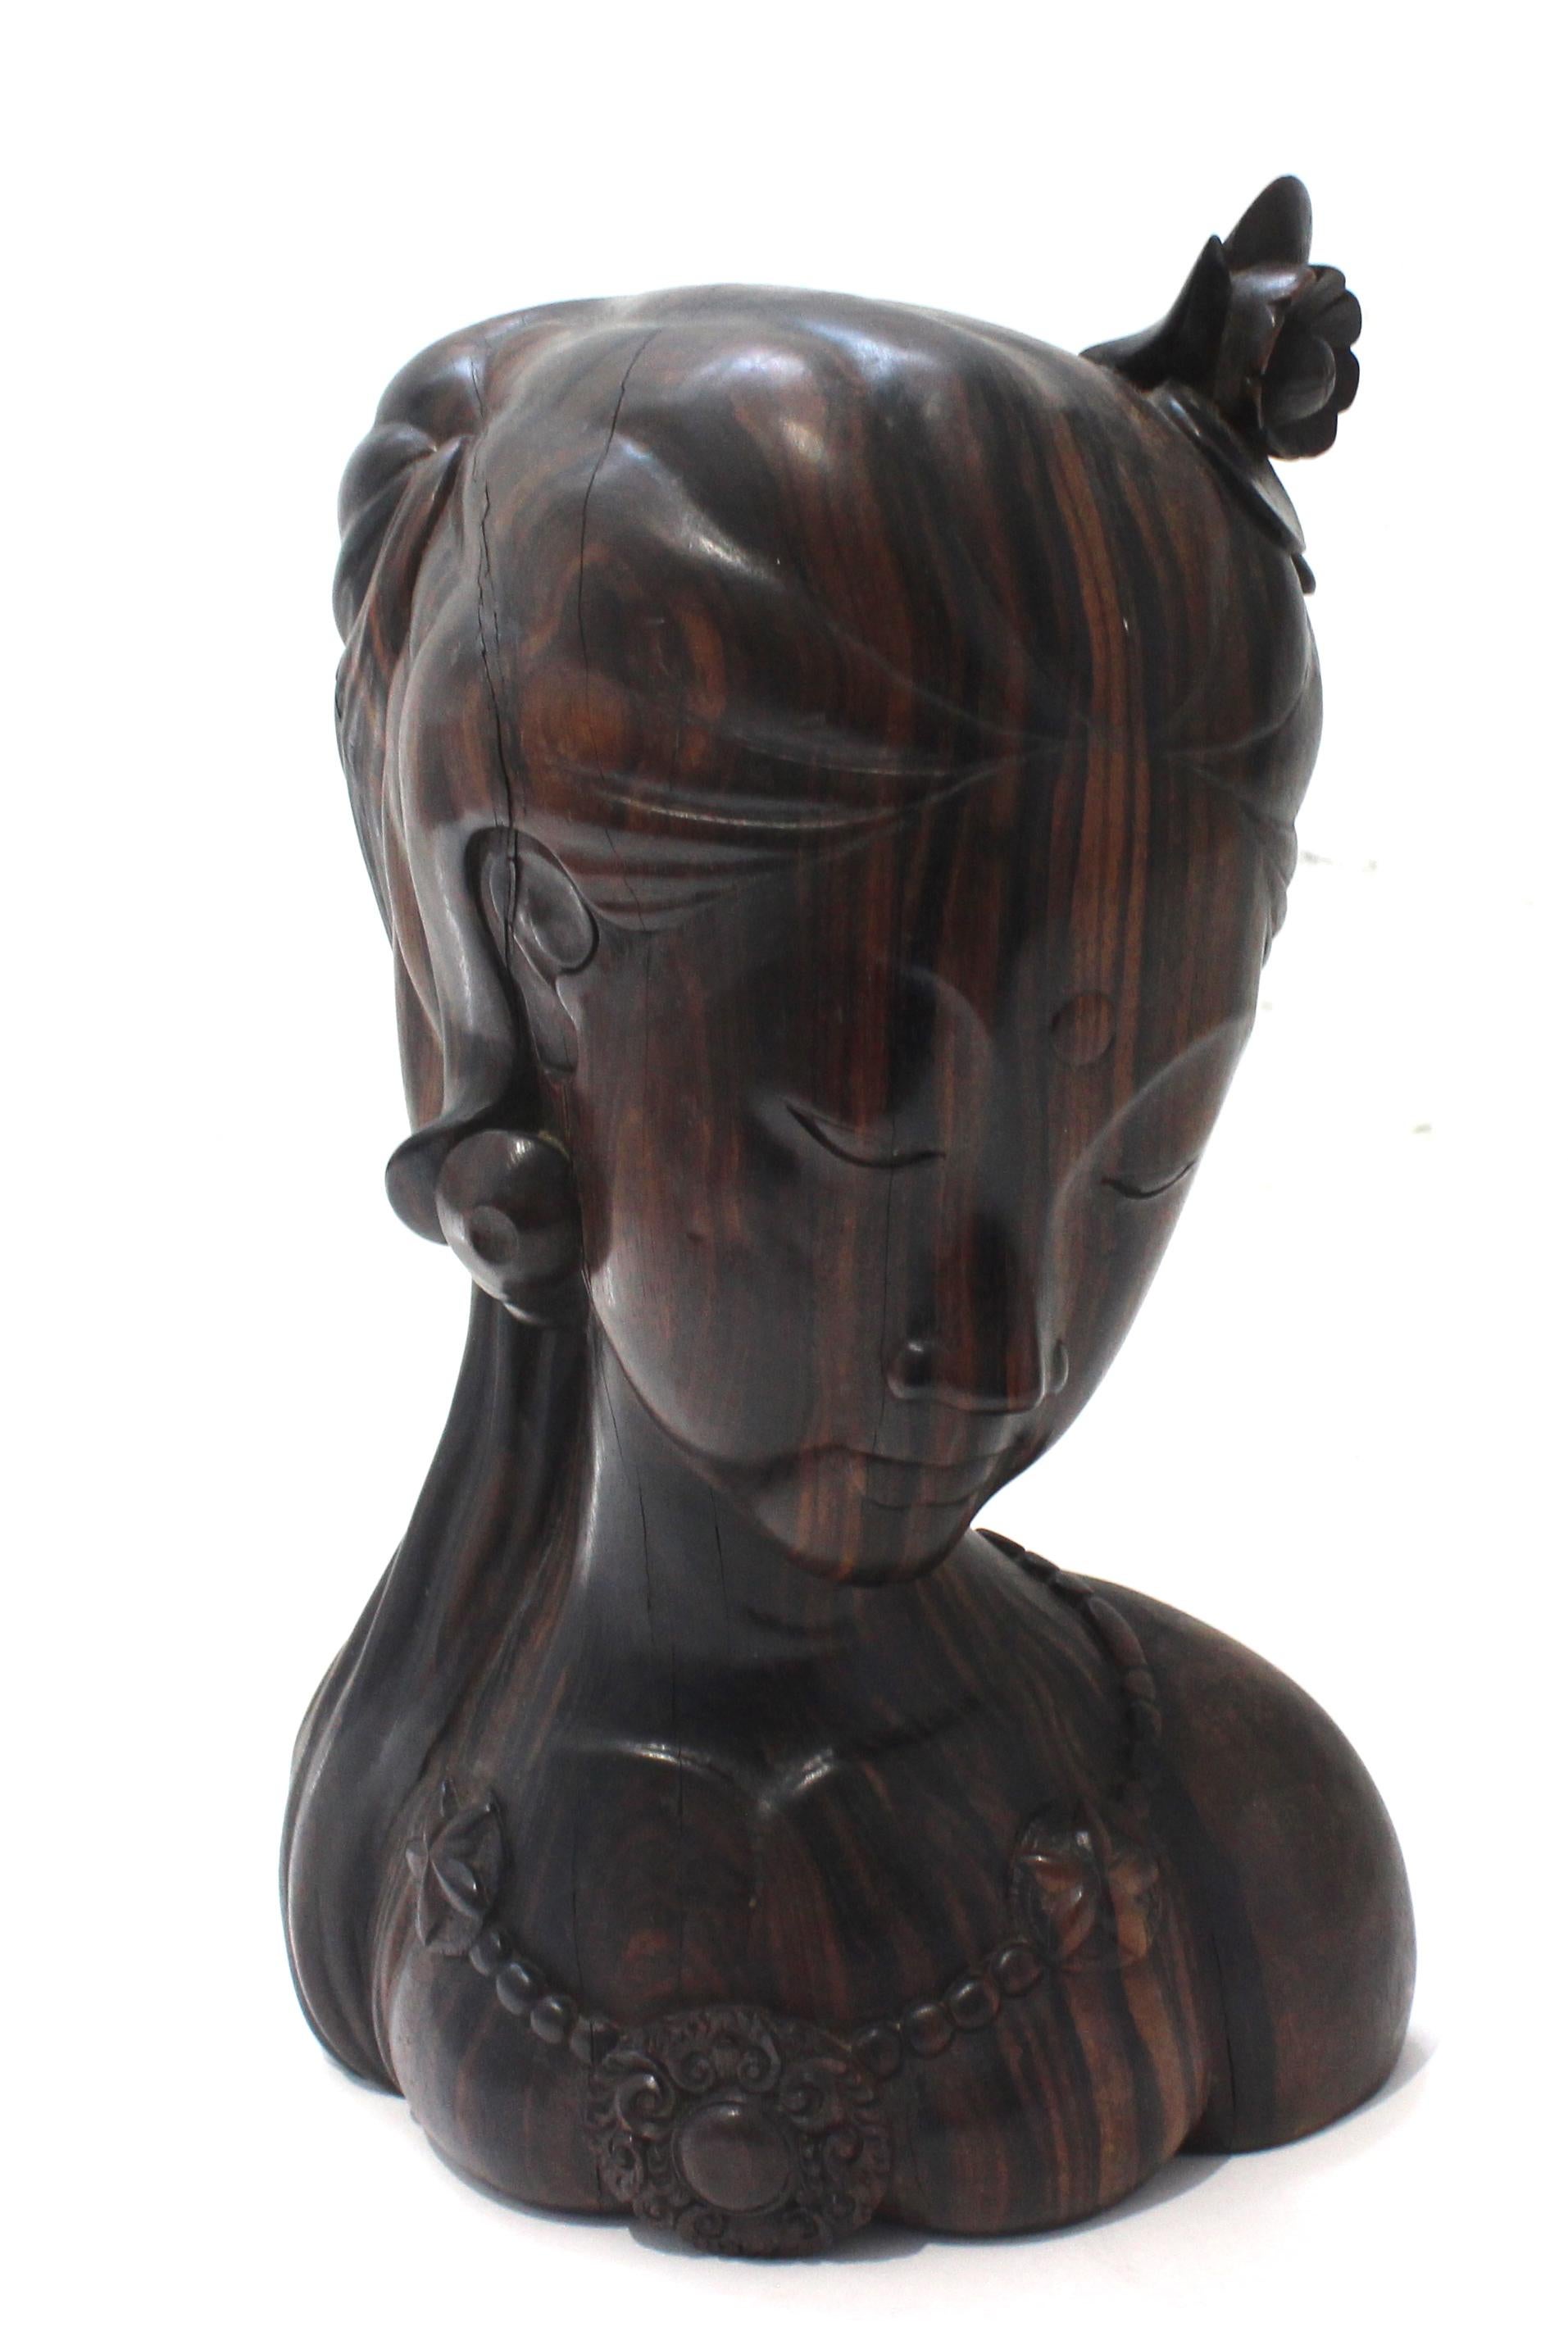 Cette élégante figurine en bois de rose représentant une jeune femme a été créée à Bali. Sa forme et l'utilisation des matériaux lui confèrent un caractère subtil. La figure est parée d'une seule fleur dans les cheveux, et d'un collier orné de